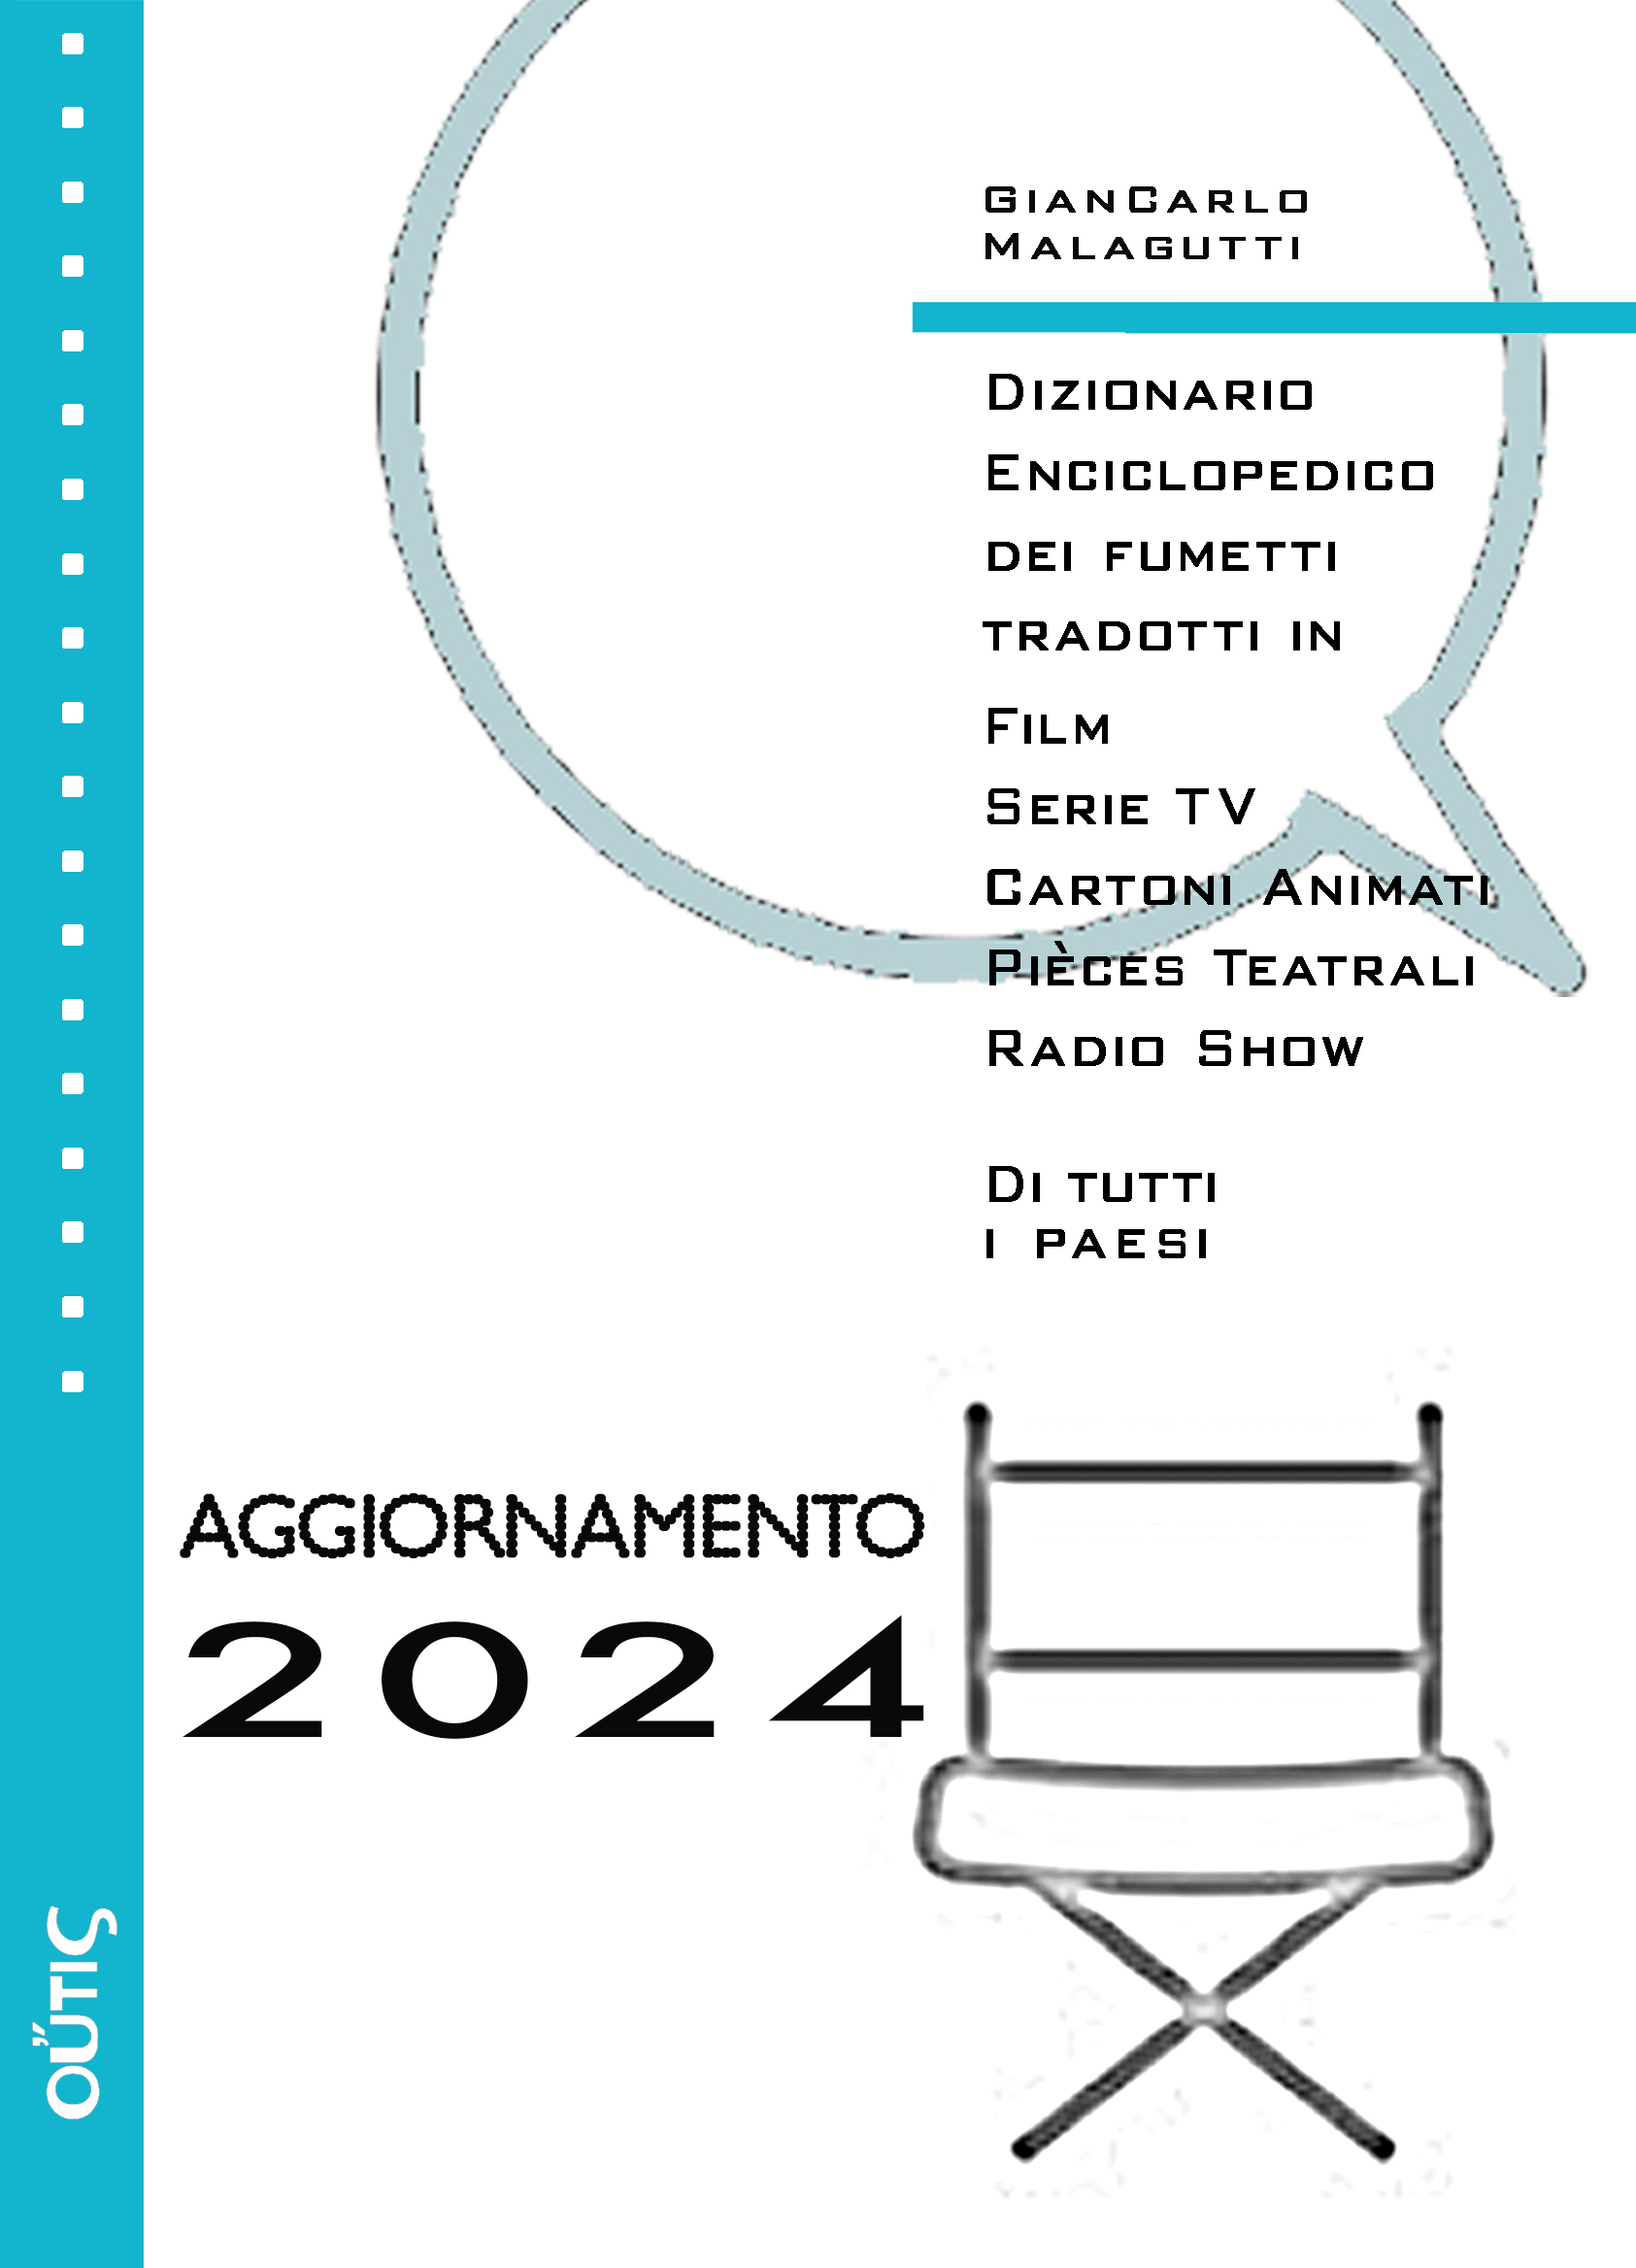 Aggiornamento 2024 Dizionario enciclopedico Film a Fumetti